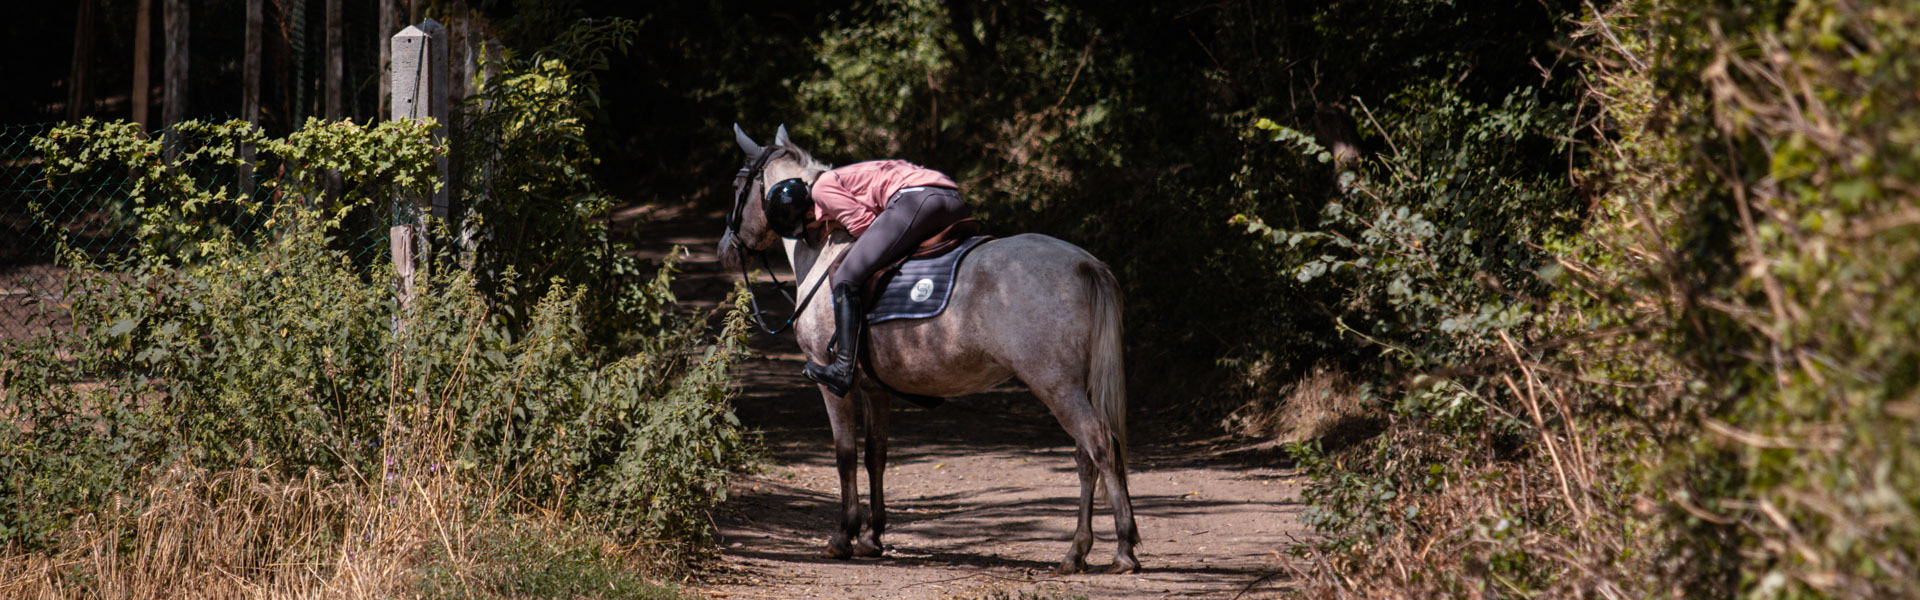 faire belles photo à cheval equitation saut action mouvement